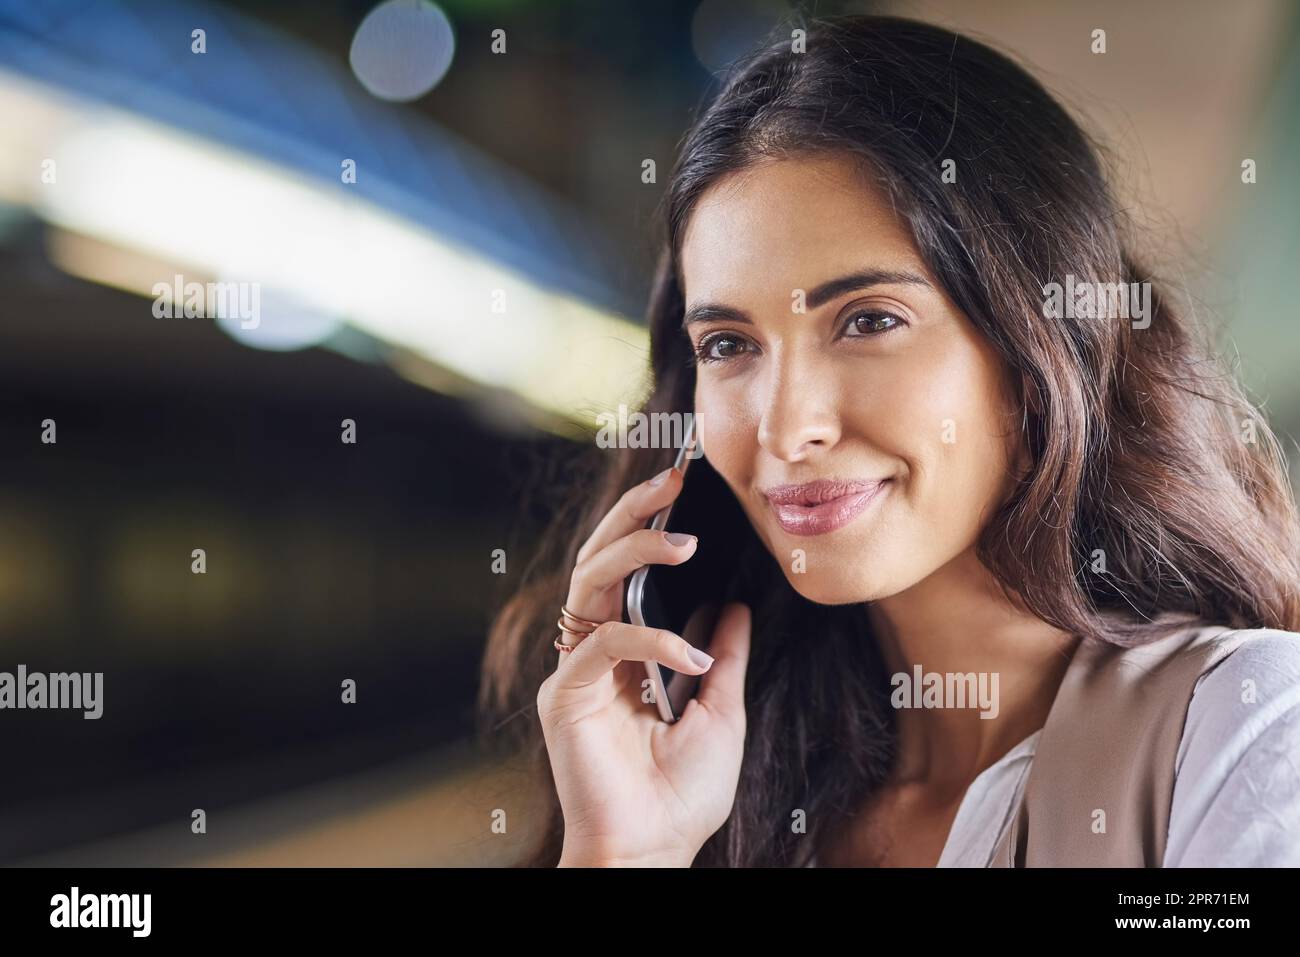 Hören Sie gute Nachrichten während der Fahrt. Ausgeschnittene Aufnahme einer jungen attraktiven Frau, die auf einem Anruf und mit dem Zug pendelte. Stockfoto